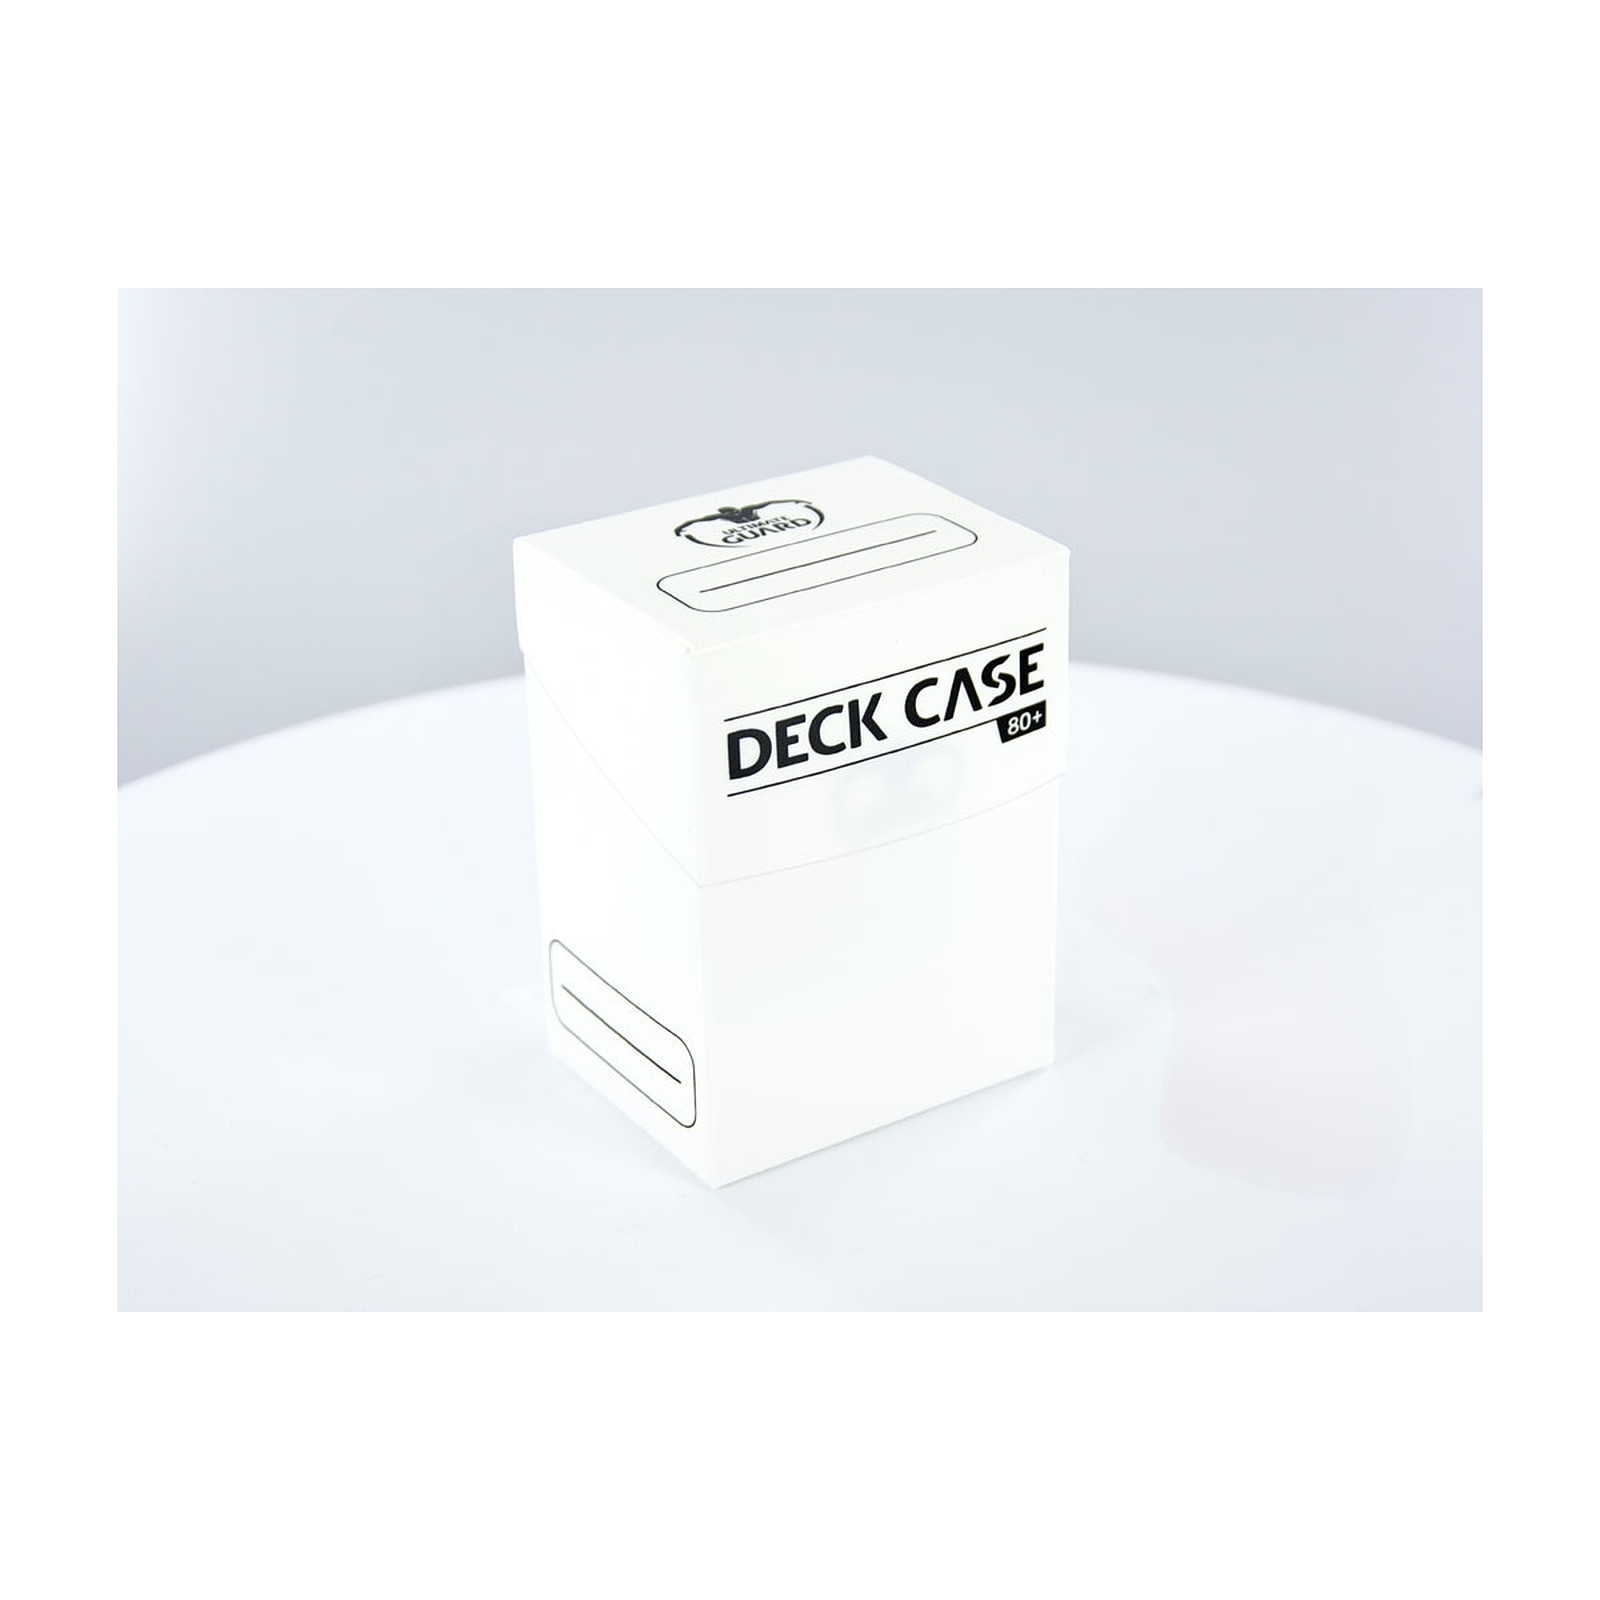 Ultimate Guard - Boite pour cartes Deck Case 80+ taille standard Blanc - Accessoire jeux Ultimate Guard